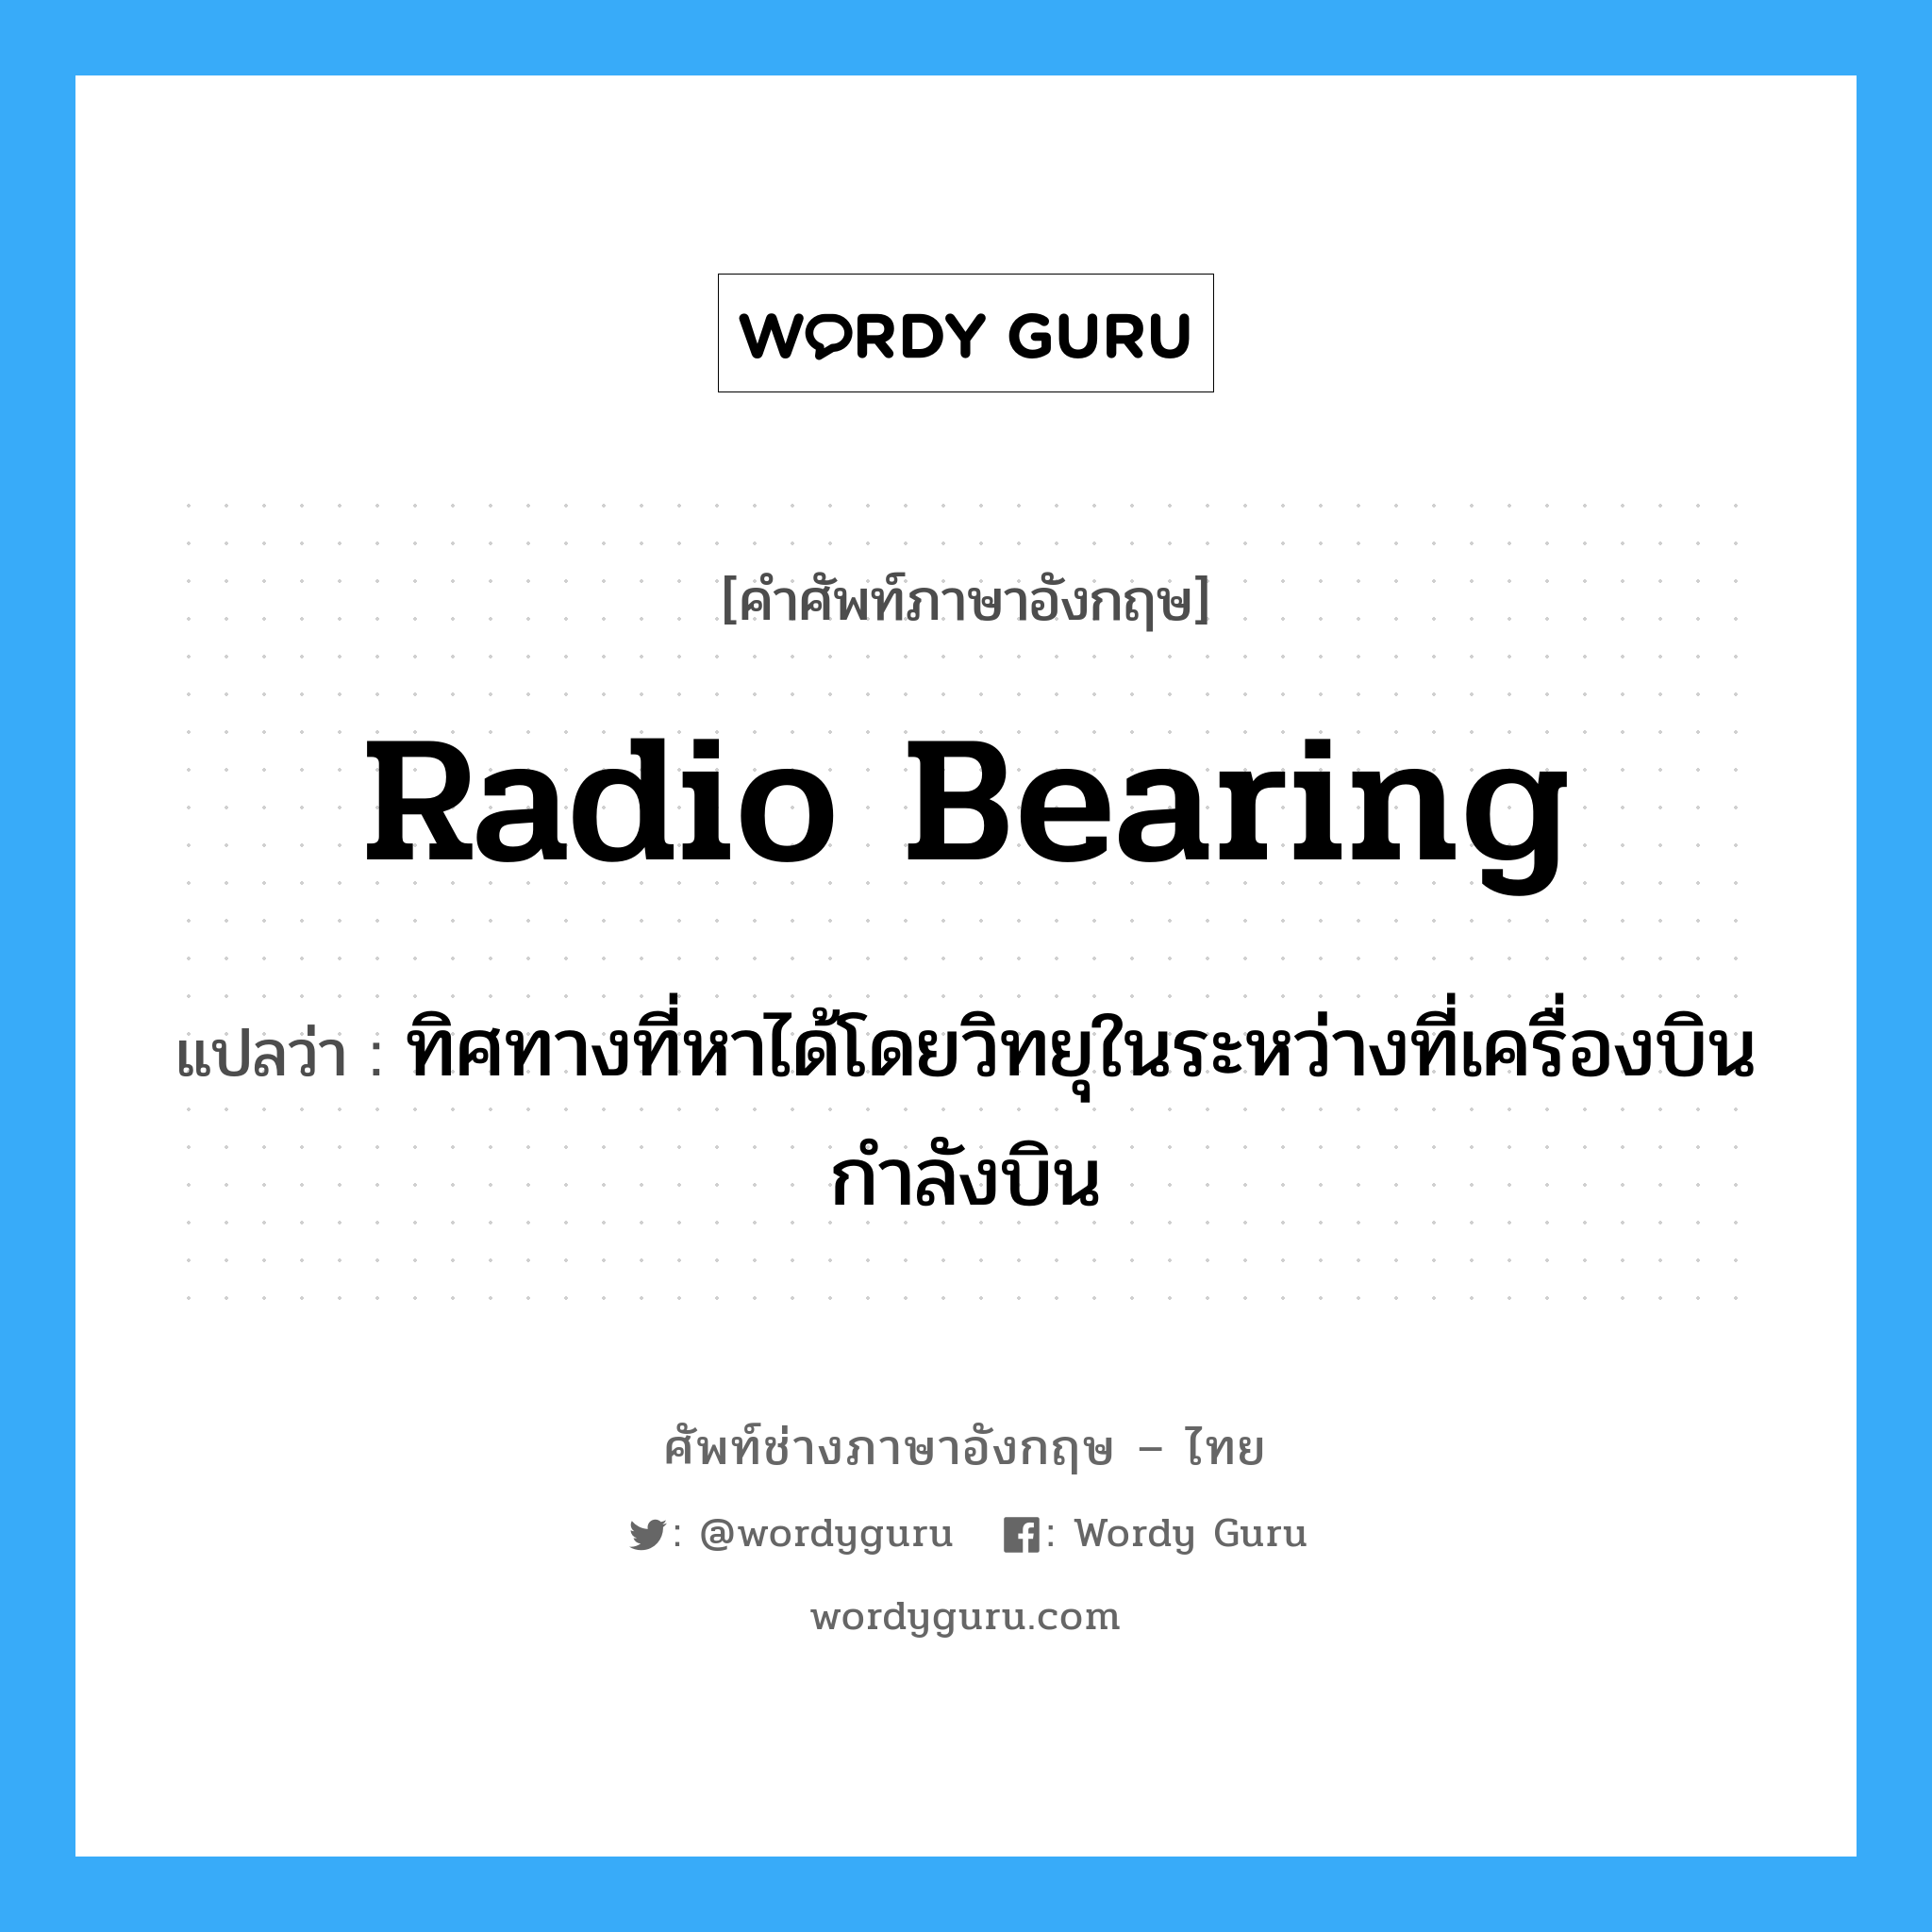 radio bearing แปลว่า?, คำศัพท์ช่างภาษาอังกฤษ - ไทย radio bearing คำศัพท์ภาษาอังกฤษ radio bearing แปลว่า ทิศทางที่หาได้โดยวิทยุในระหว่างที่เครื่องบินกำลังบิน